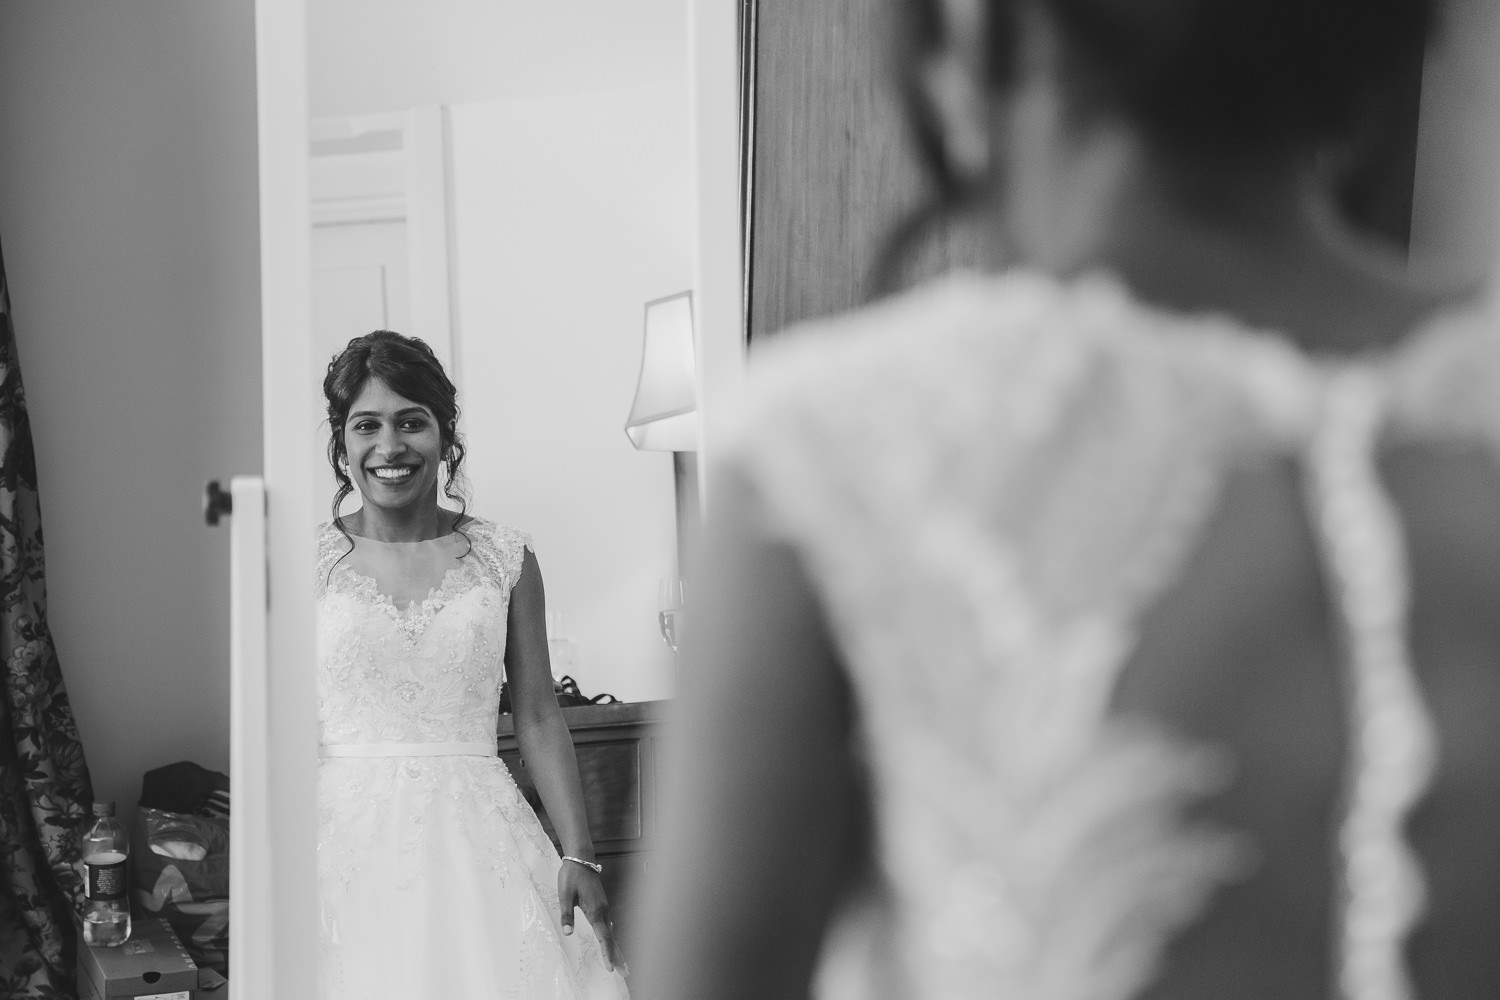 Bride looking in a mirror.